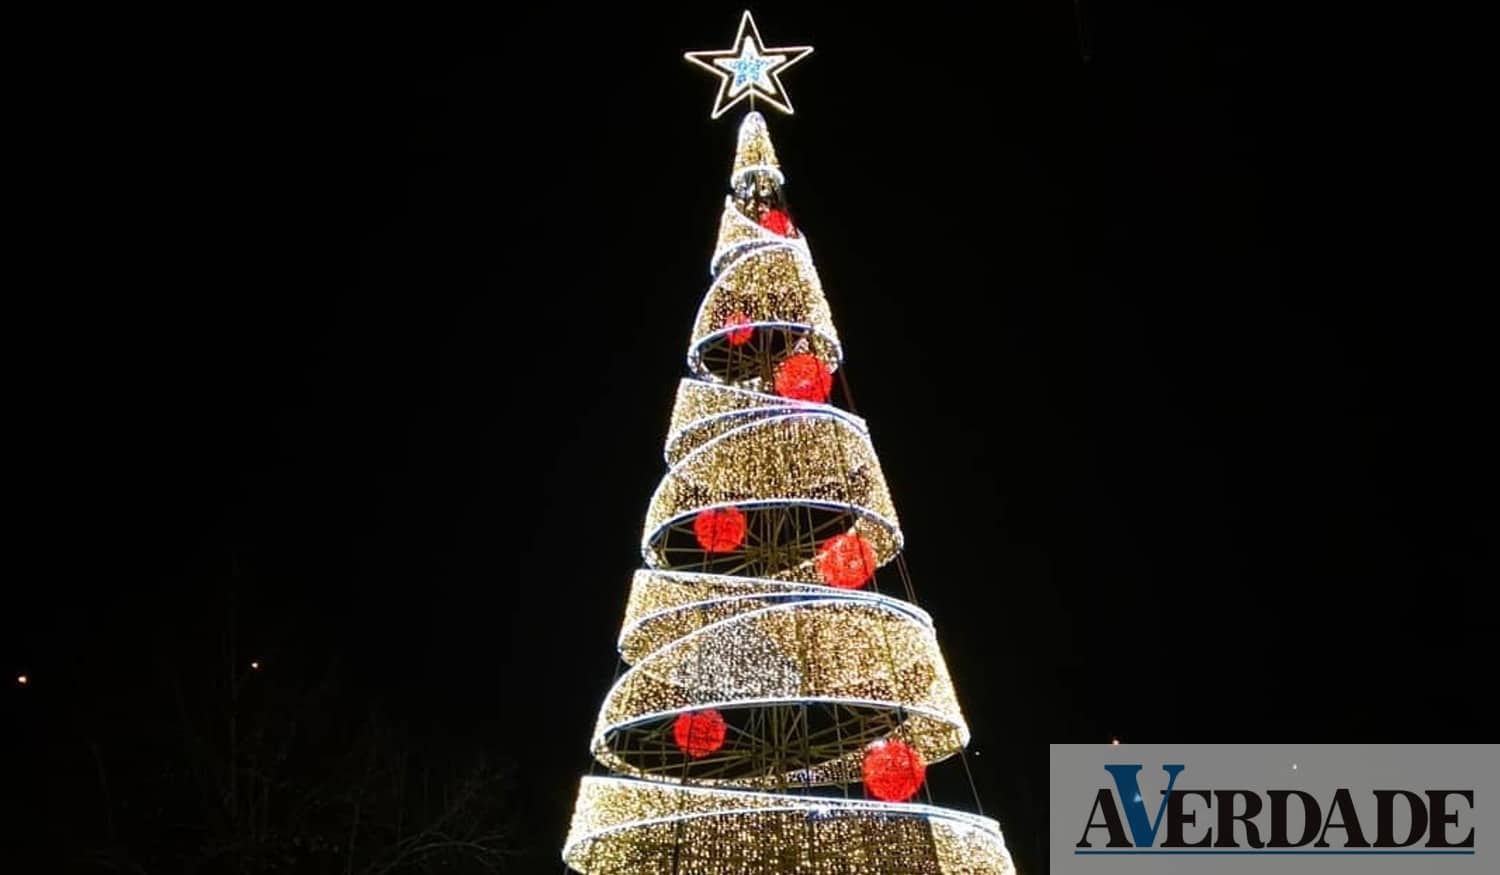 Município de Amarante vai inaugurar as decorações e iluminações de Natal  este sábado | A Verdade